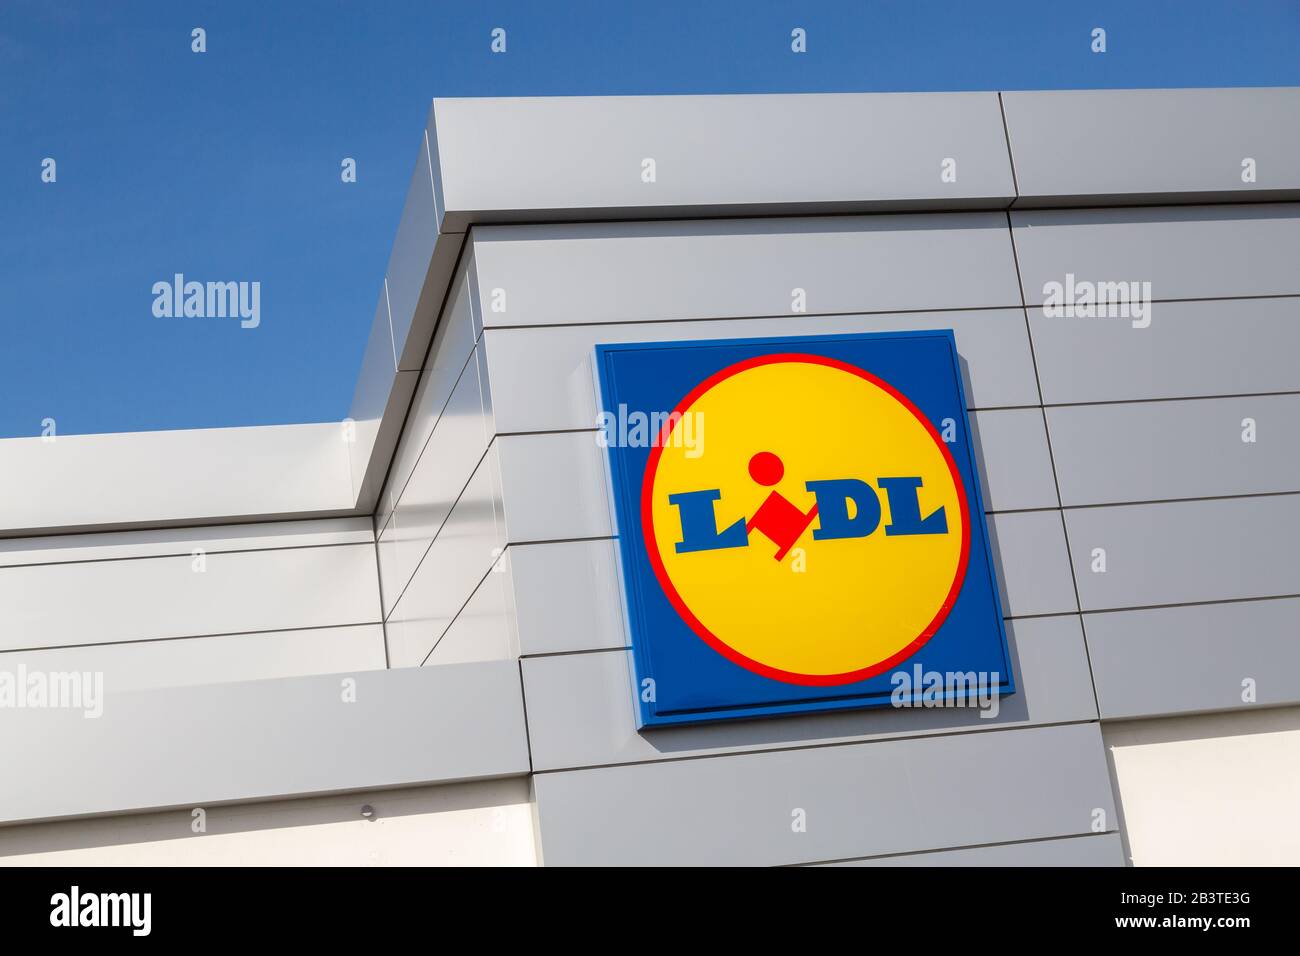 Cognac, Francia - 21 de febrero de 2020:LIDL señal de cadena de  supermercados. Lidl es una cadena alemana de supermercados de descuento,  con sede en Neckarsulm, Baden-Wuertte Fotografía de stock - Alamy